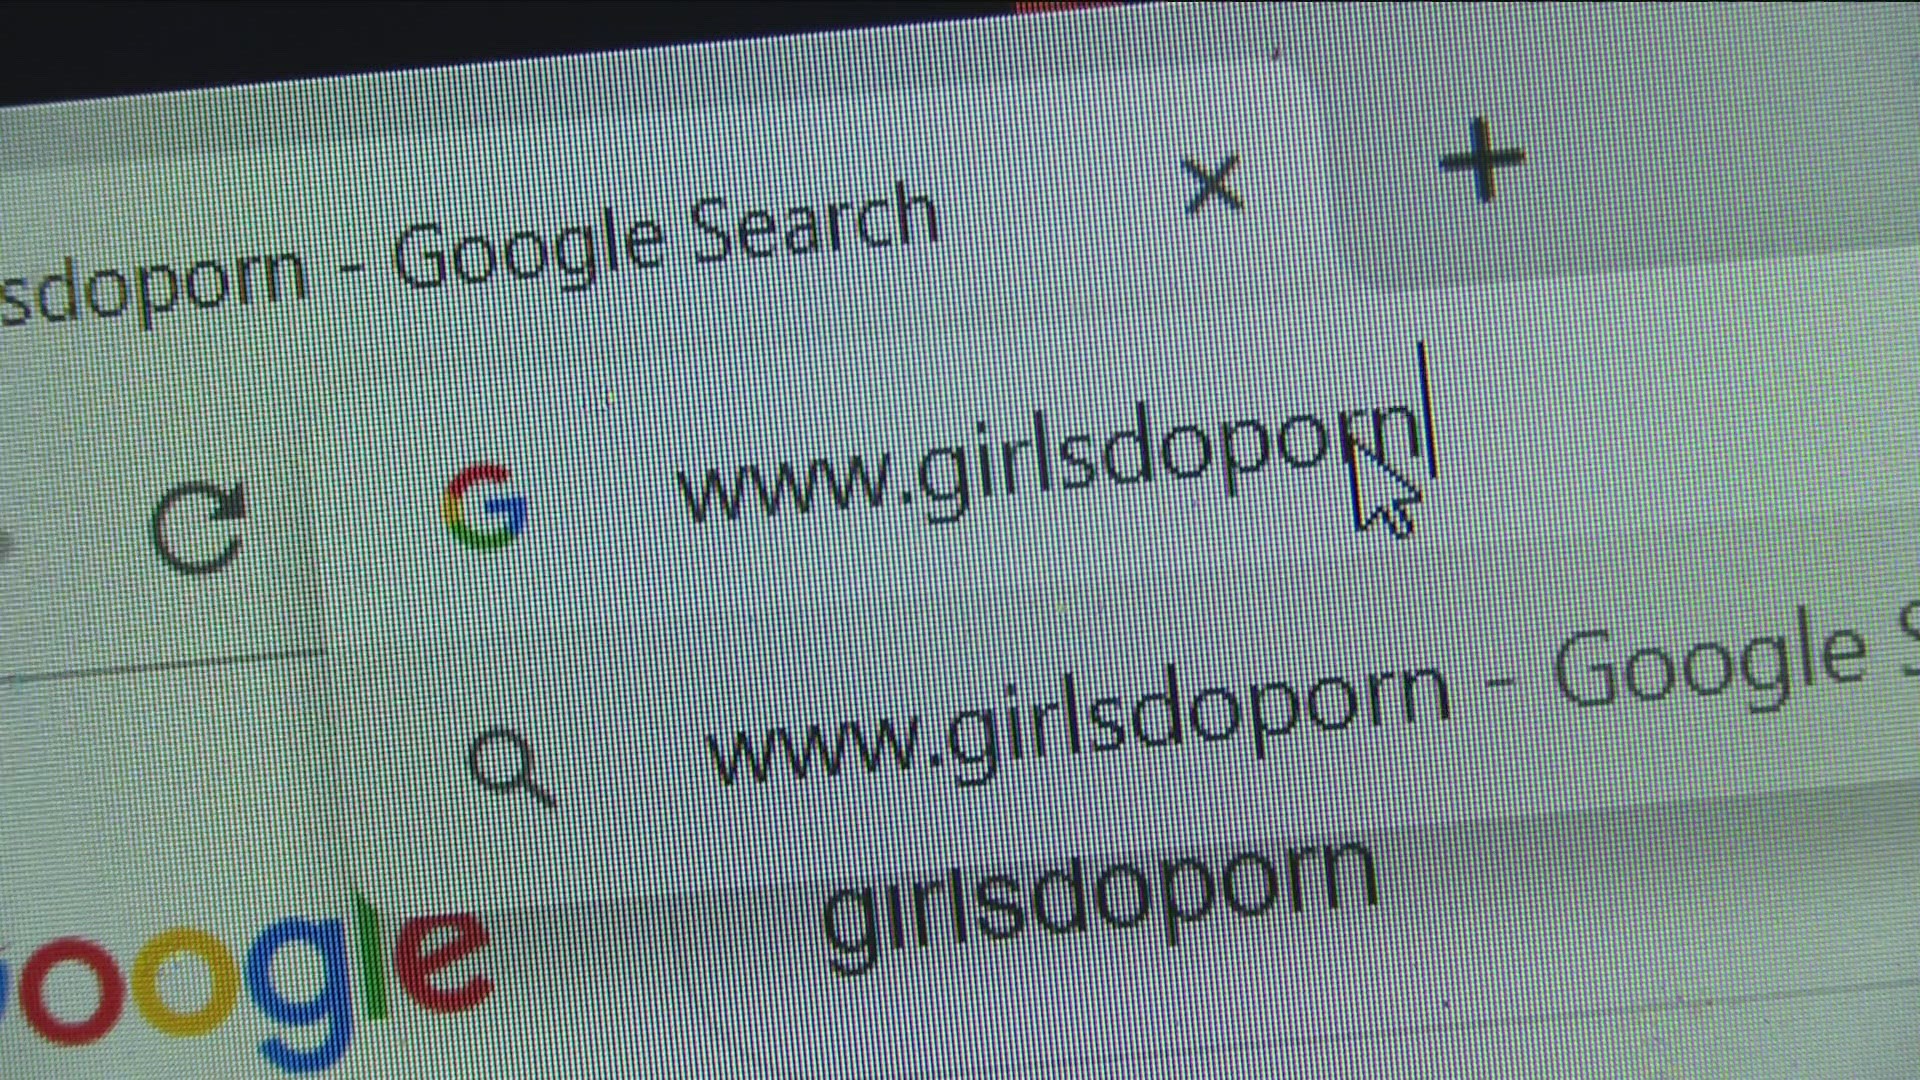 Google Sex Videos Come - Women sue Pornhub over San Diego porn scheme | cbs8.com